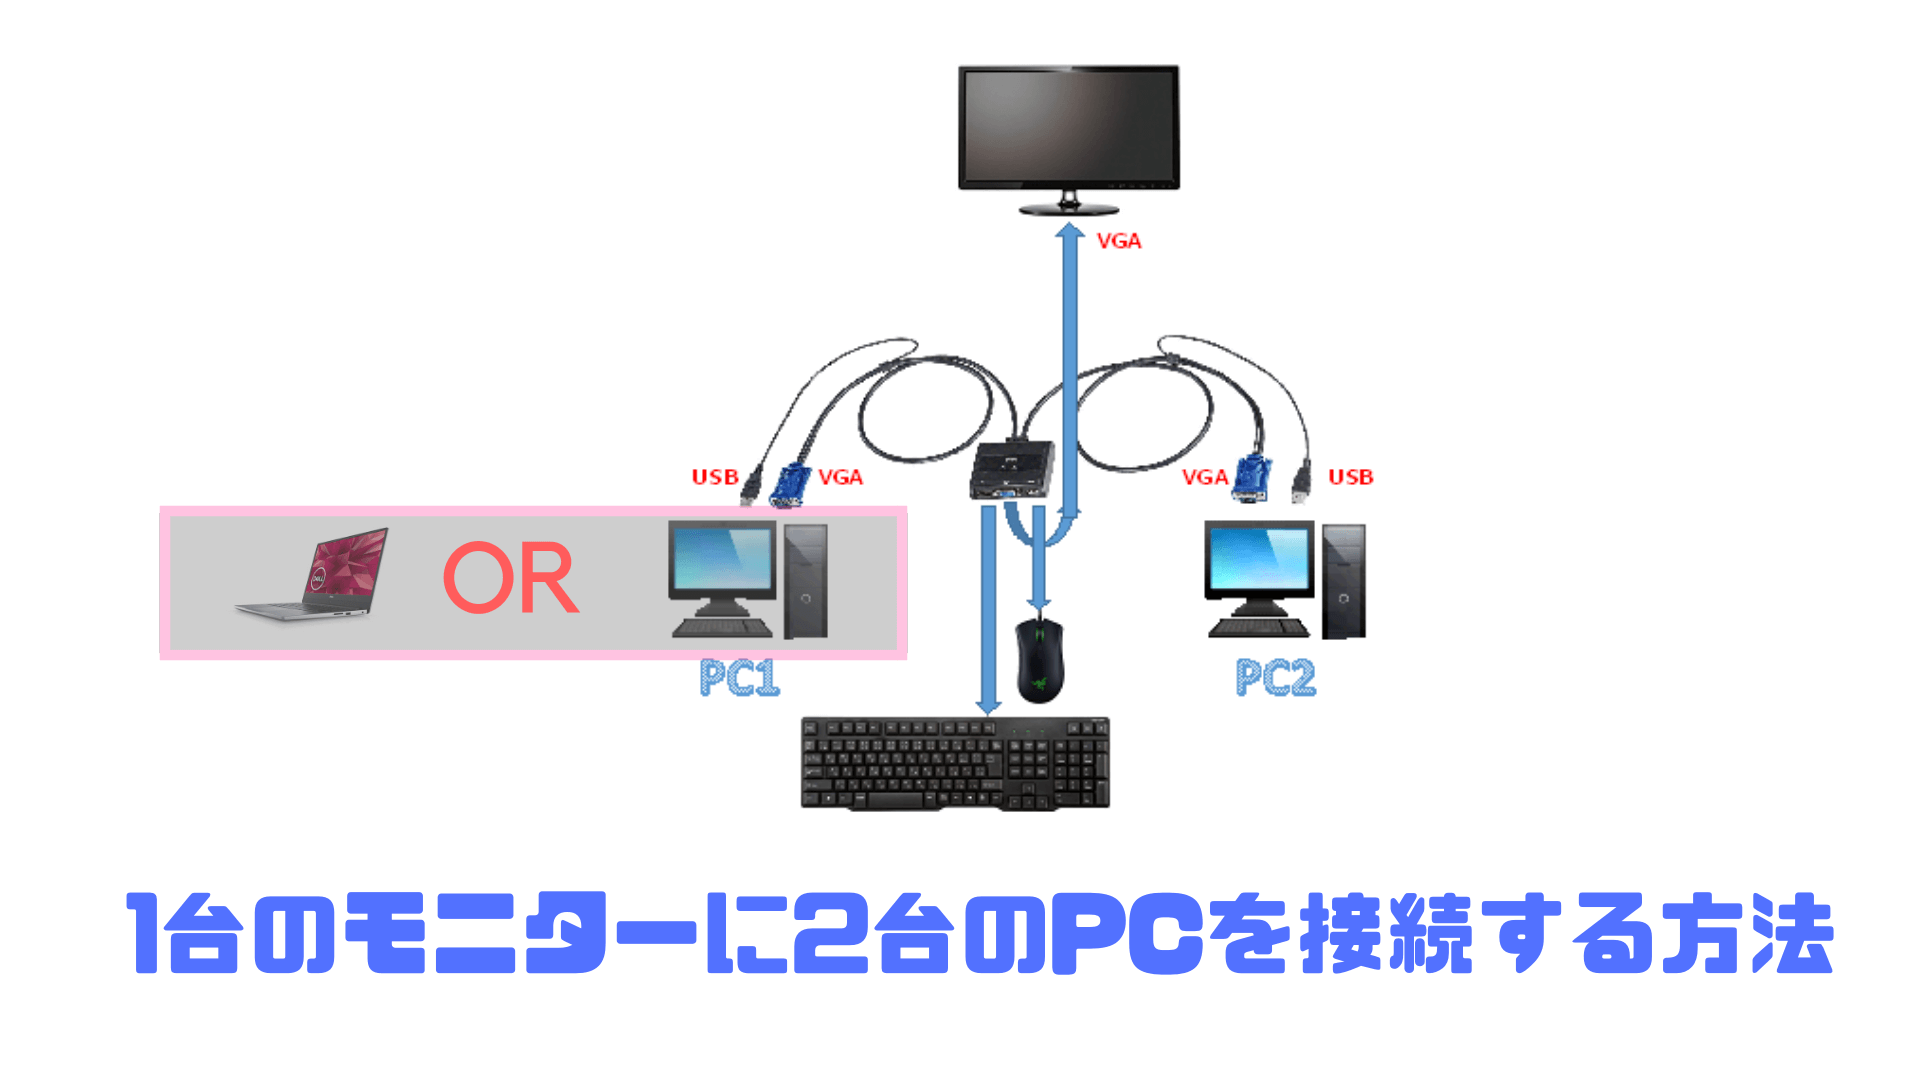 知覚的 セクタ ネックレット パソコン 2 台 モニター 1 台 接続 Sr T Jp